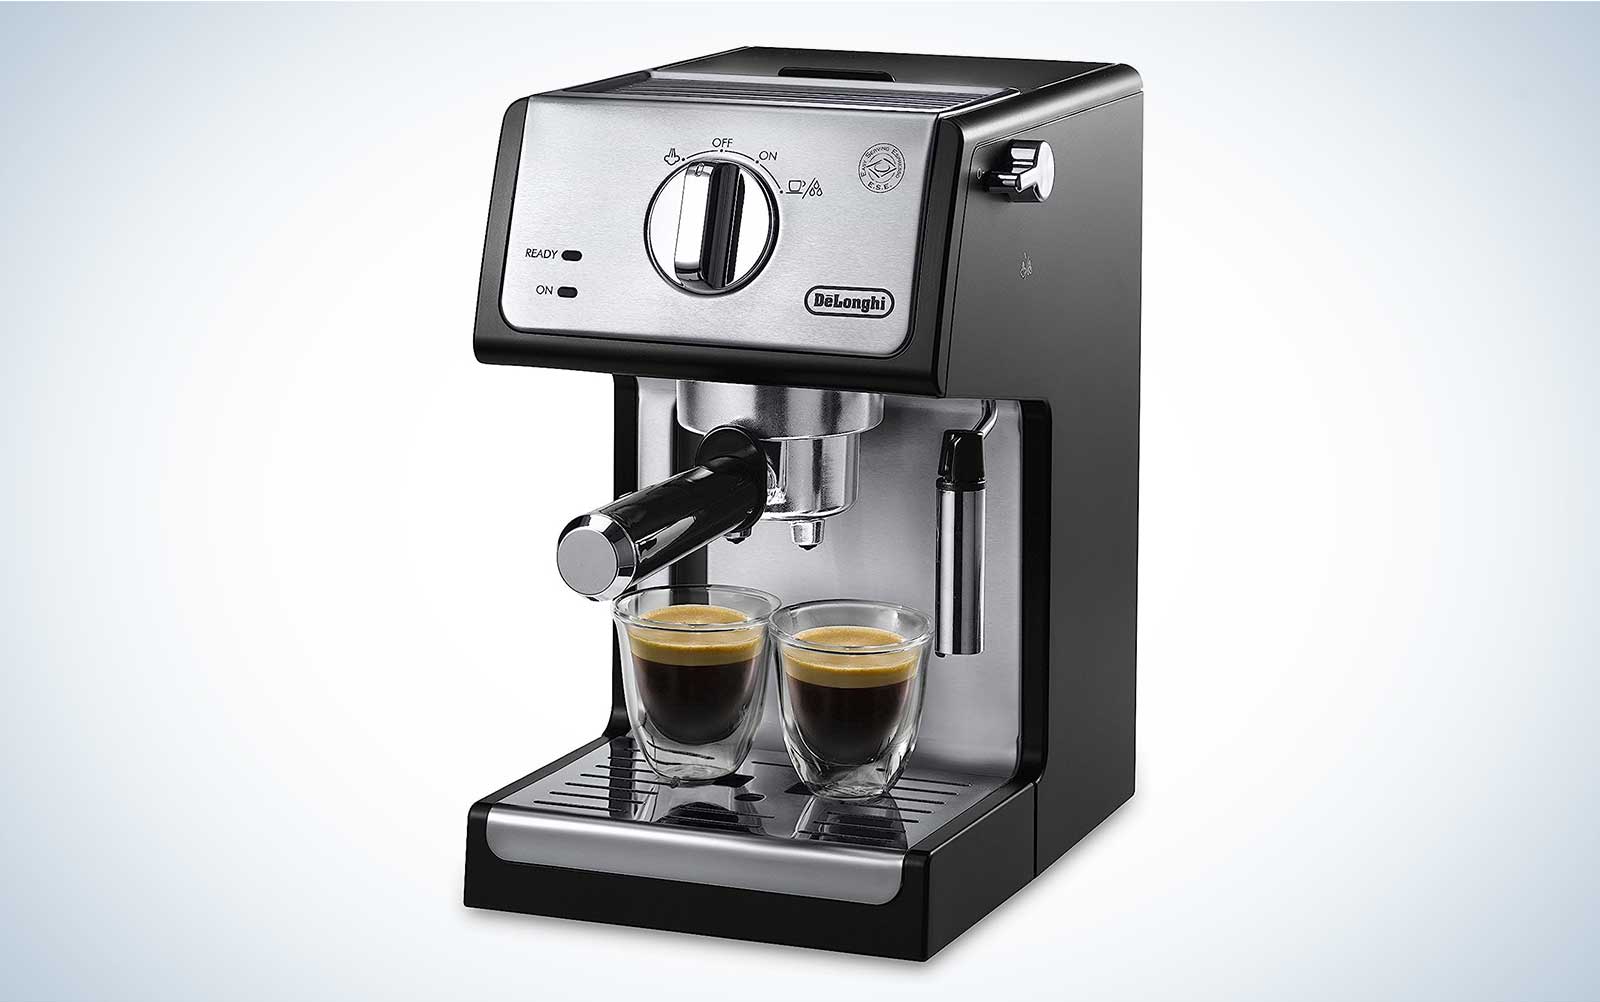 Delonghi coffee&cappuccino/frappuccino machine for Sale in Phoenix